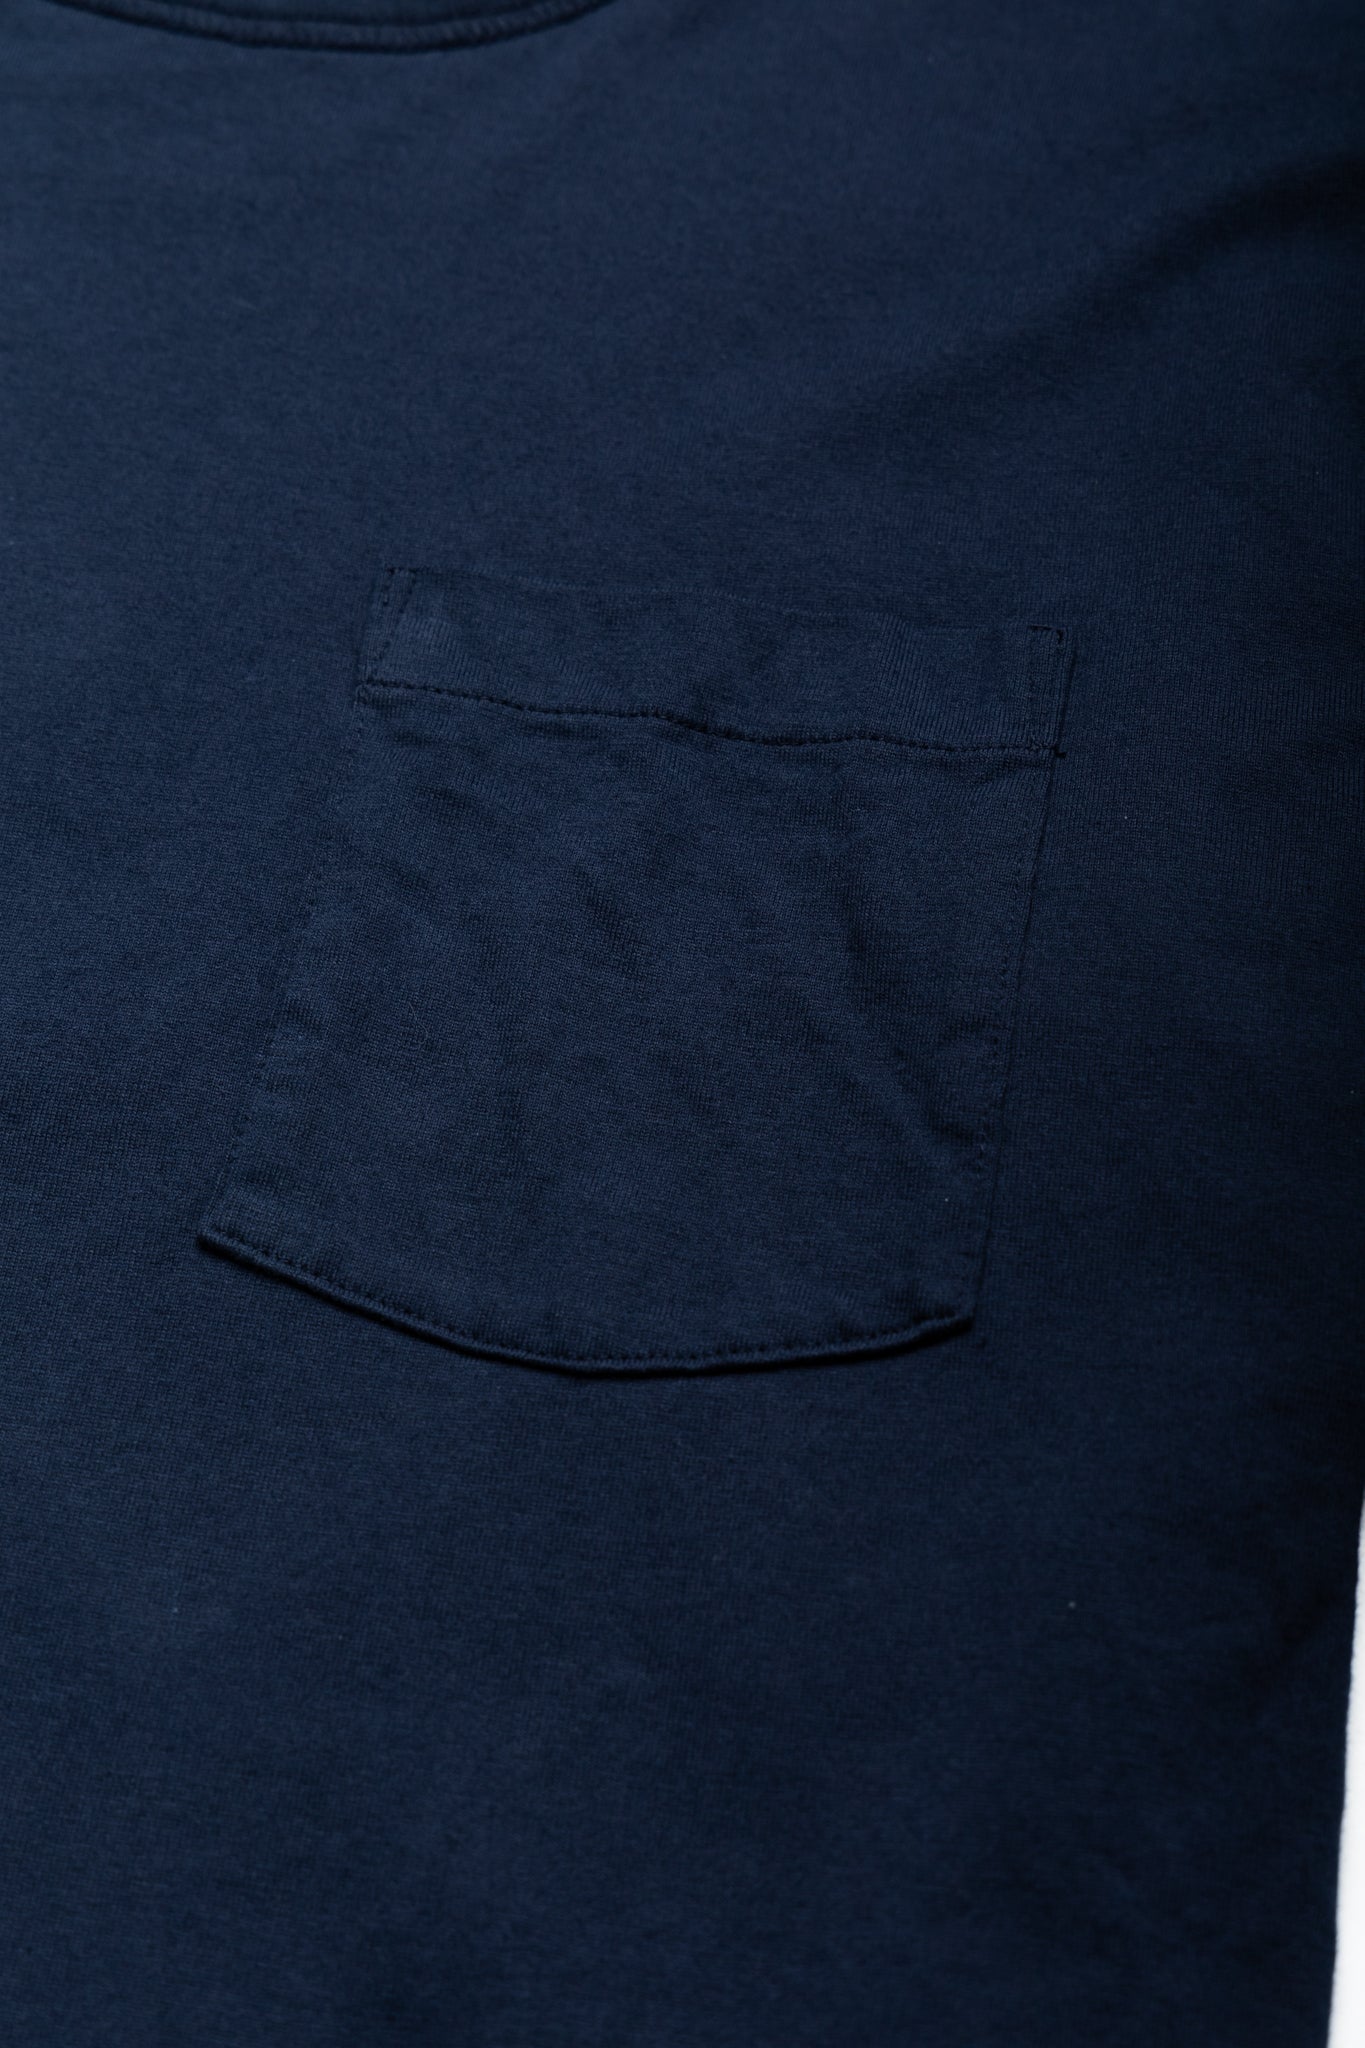 Whitesville 40/2 S/S Reversible Pocket T-Shirt - Kelly x Navy